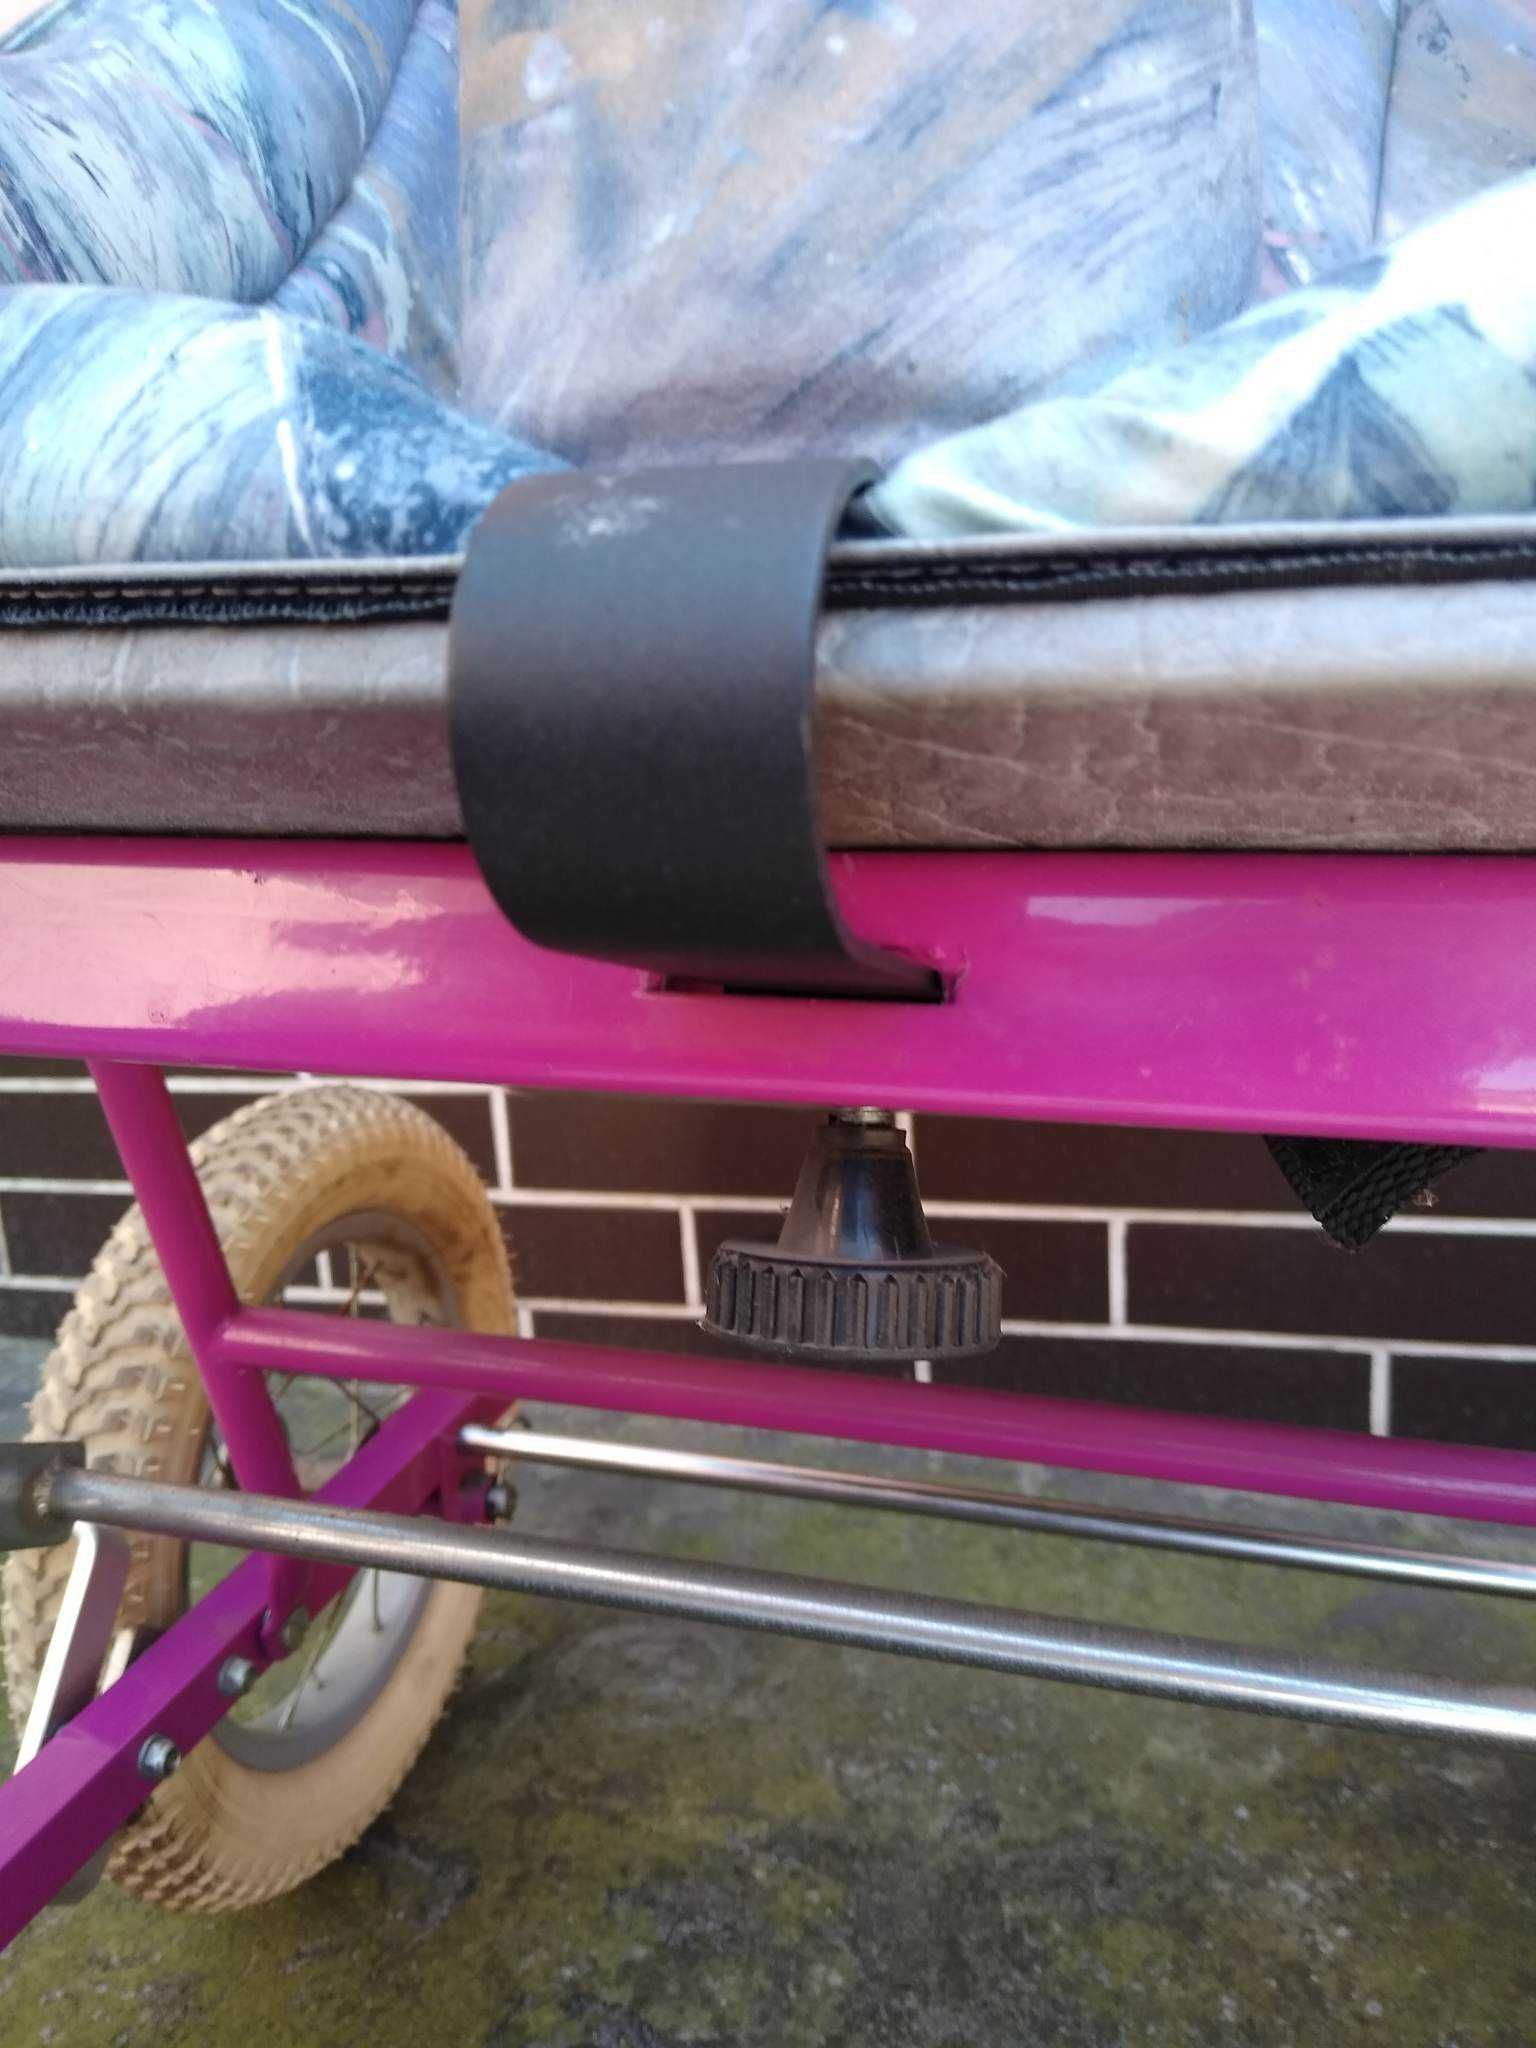 Wózek dla dziecka niepełnosprawnego